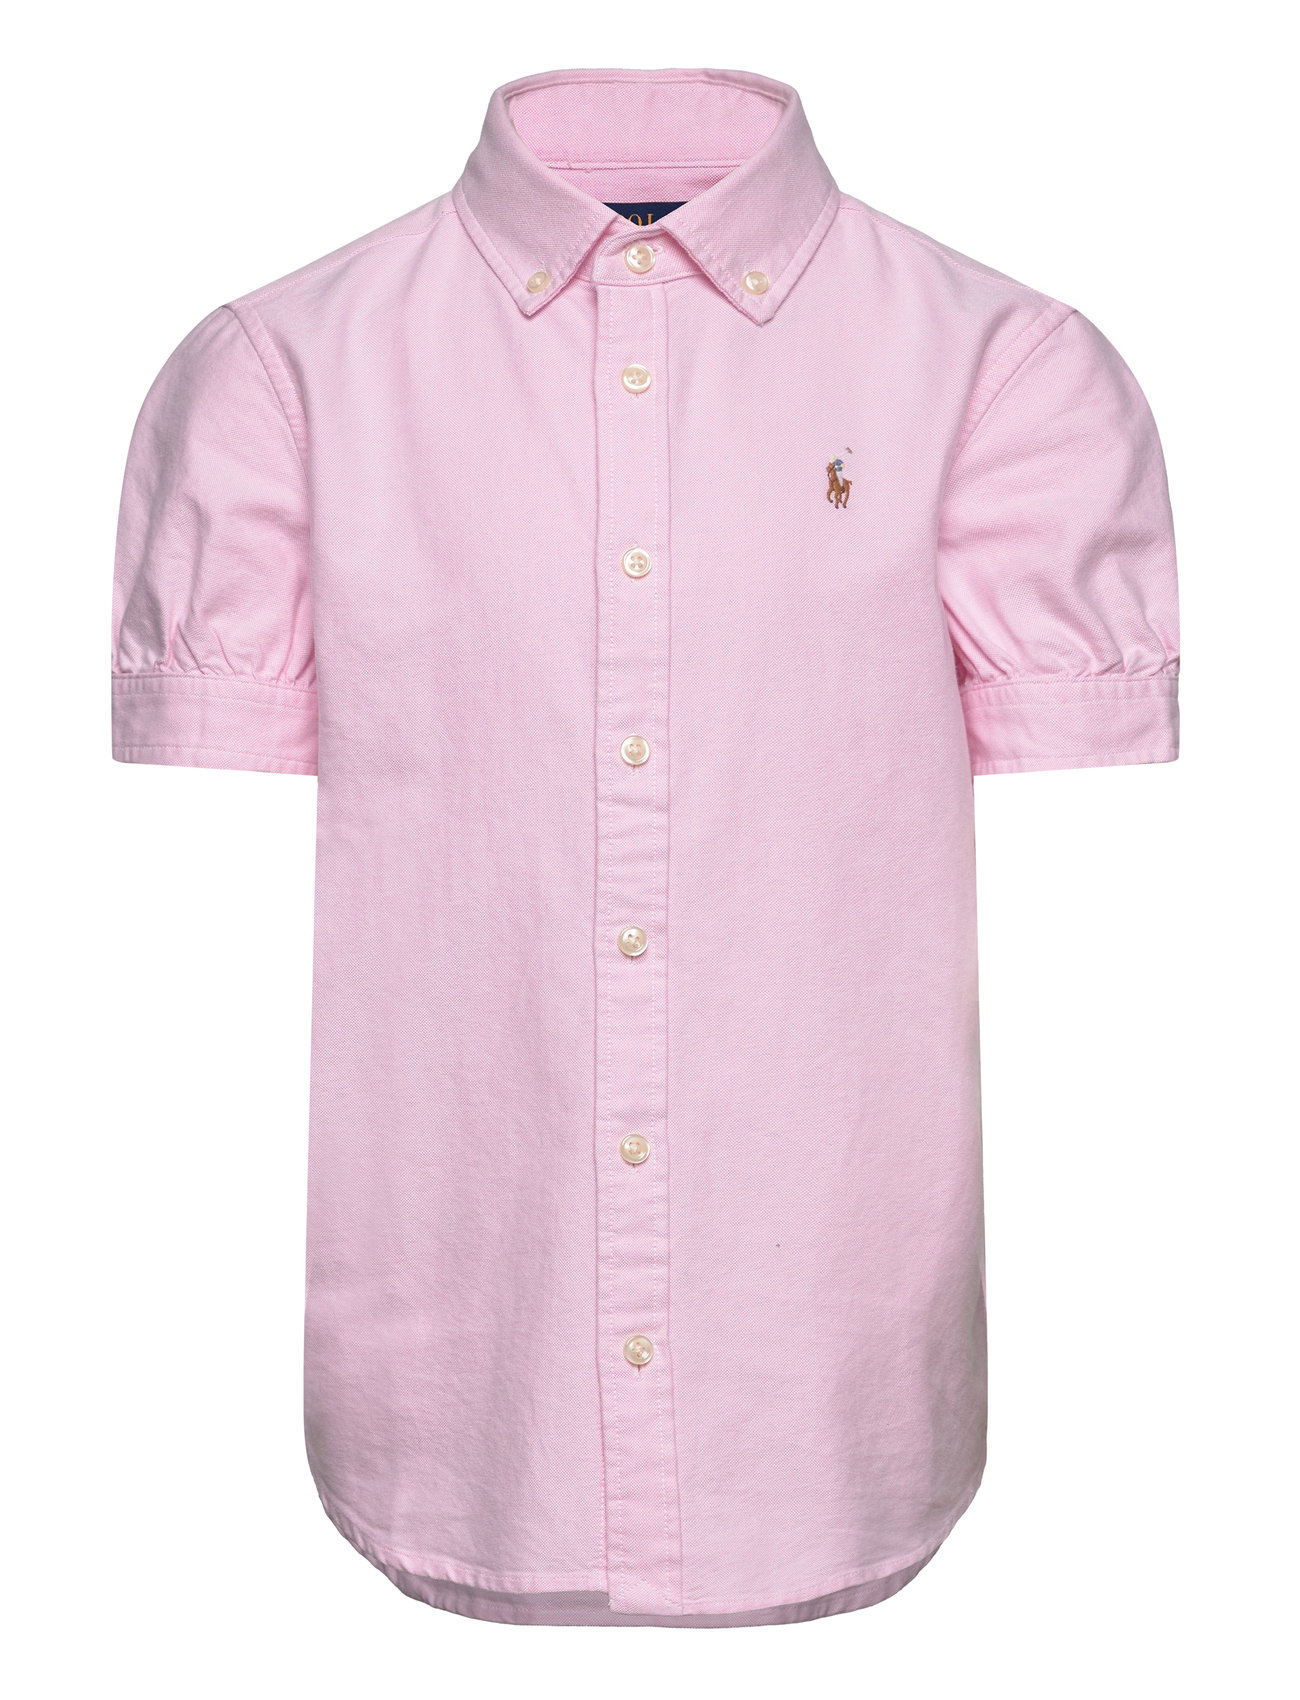 Cotton Oxford Short-Sleeve Shirt Tops Shirts Short-sleeved Shirts Pink Ralph Lauren Kids